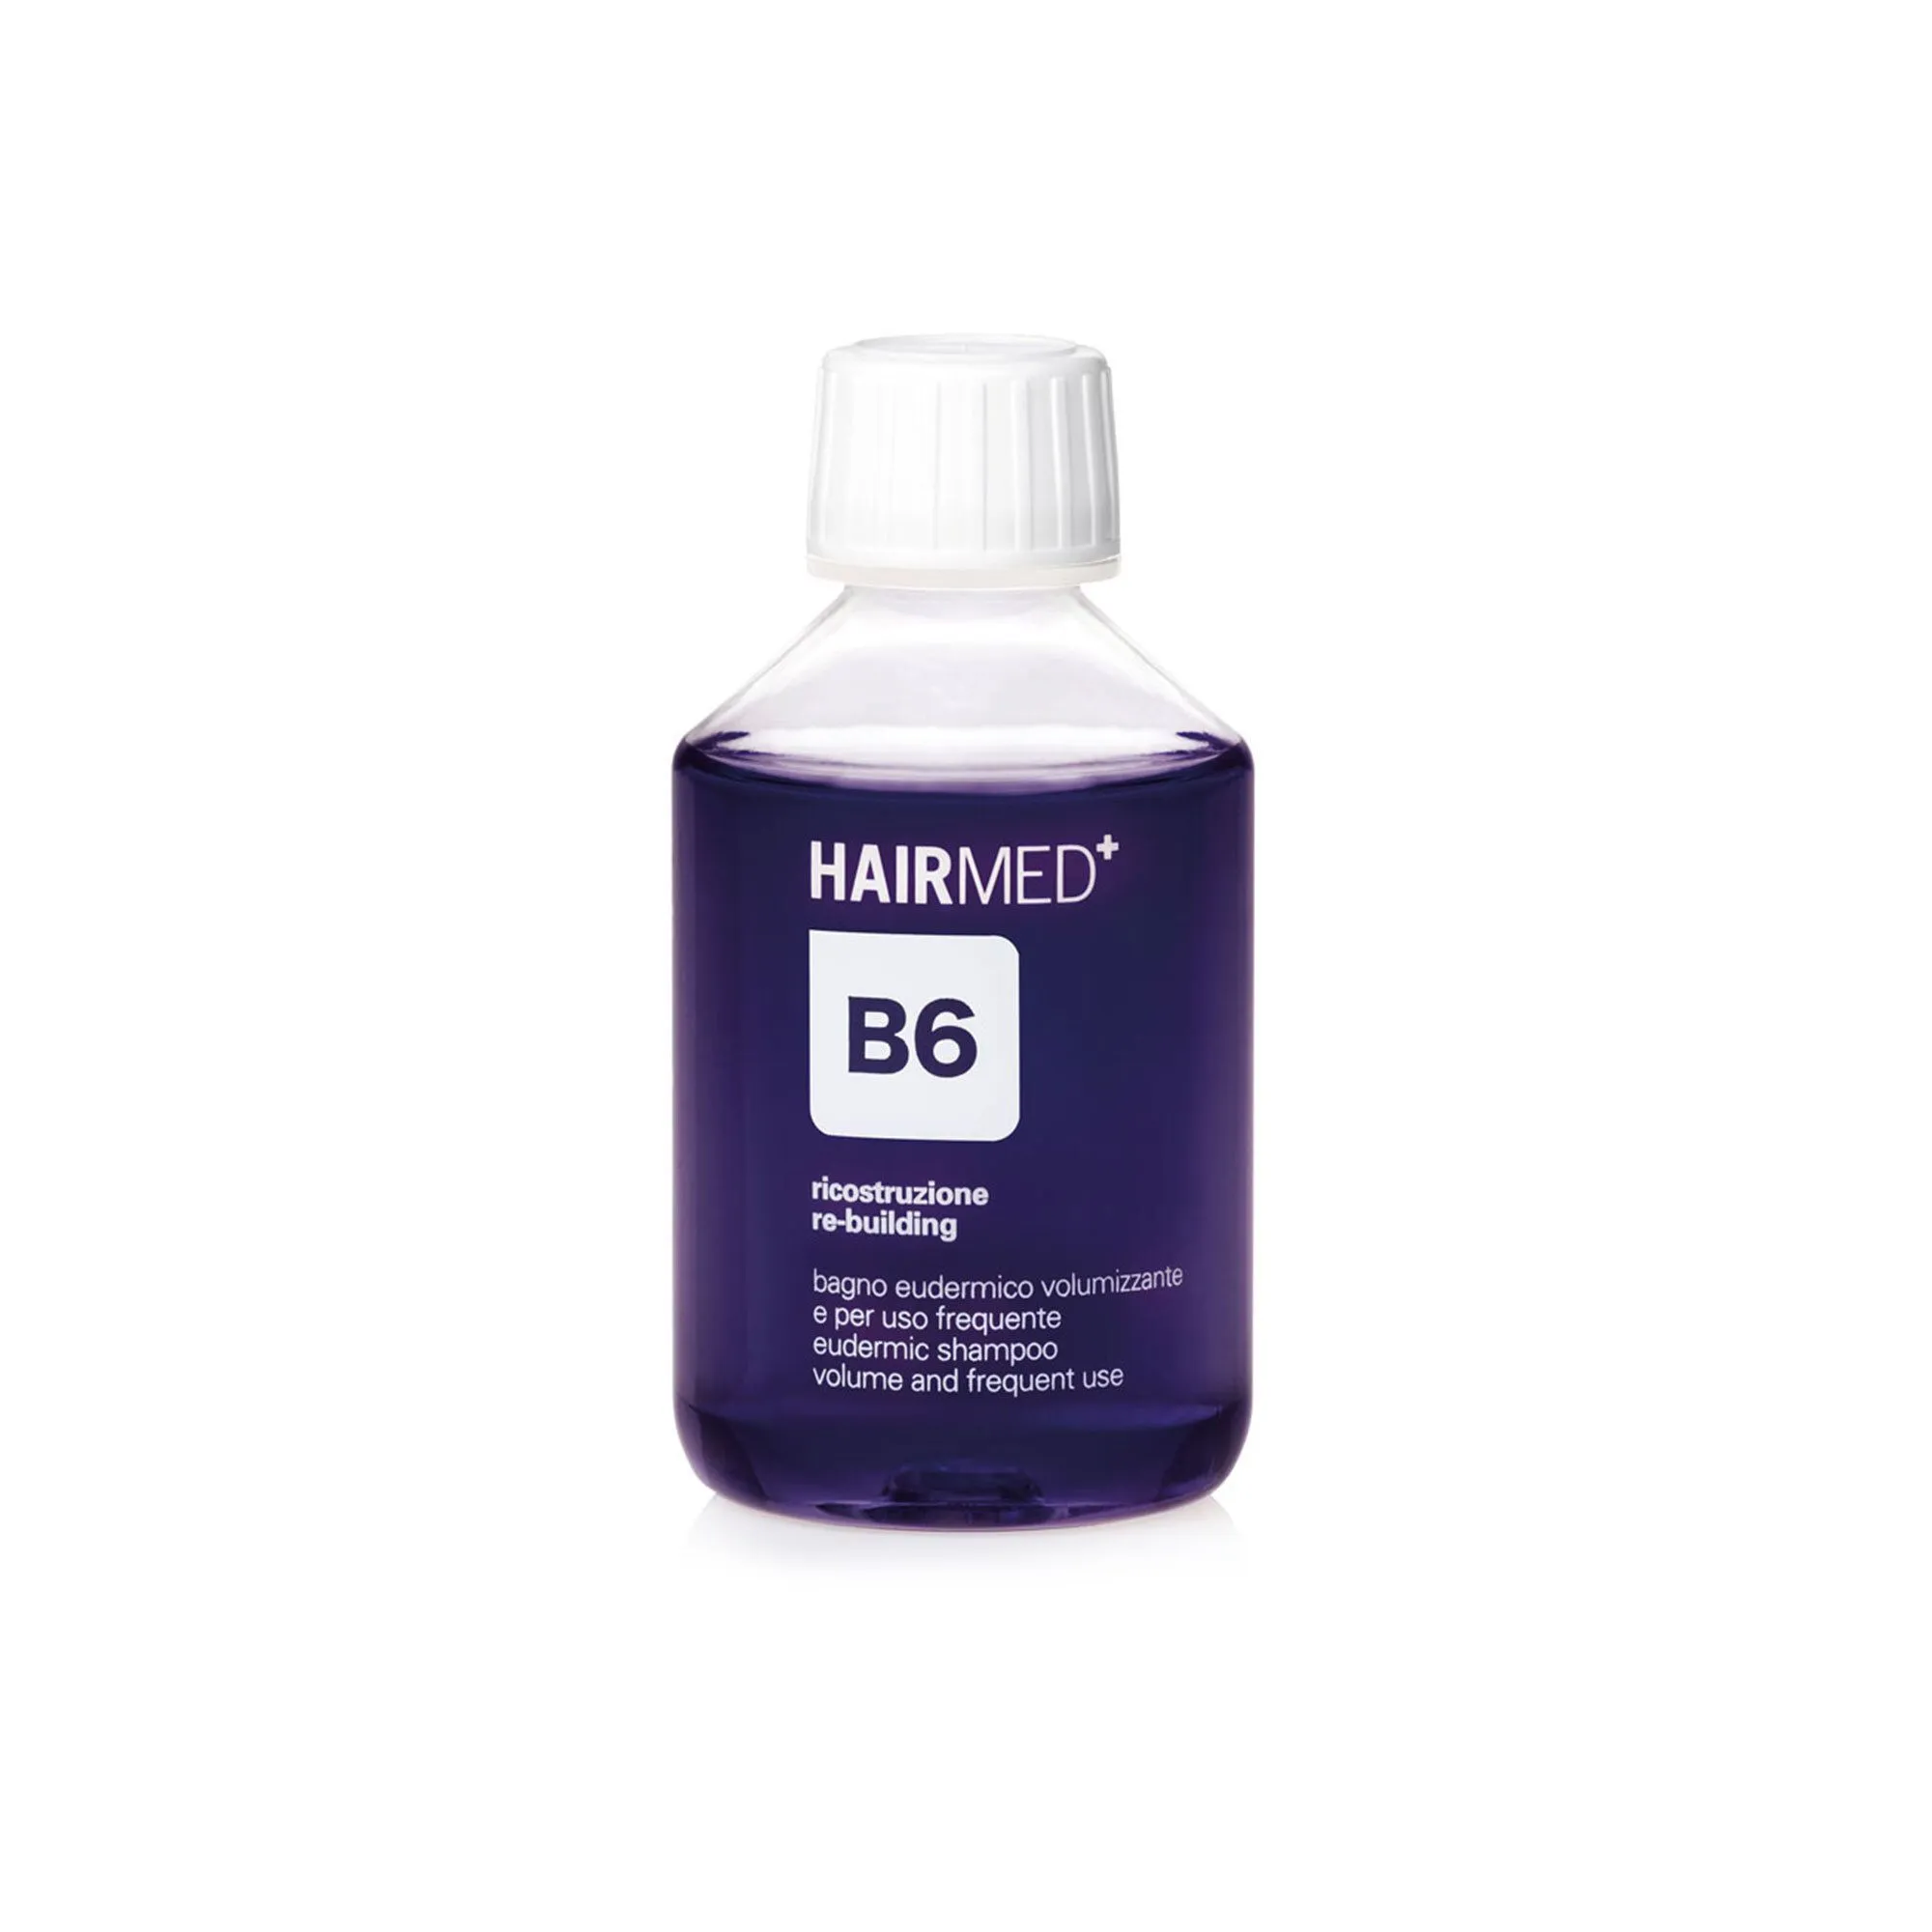 B6 Bagno Eudermico Volumizzante Shampoo